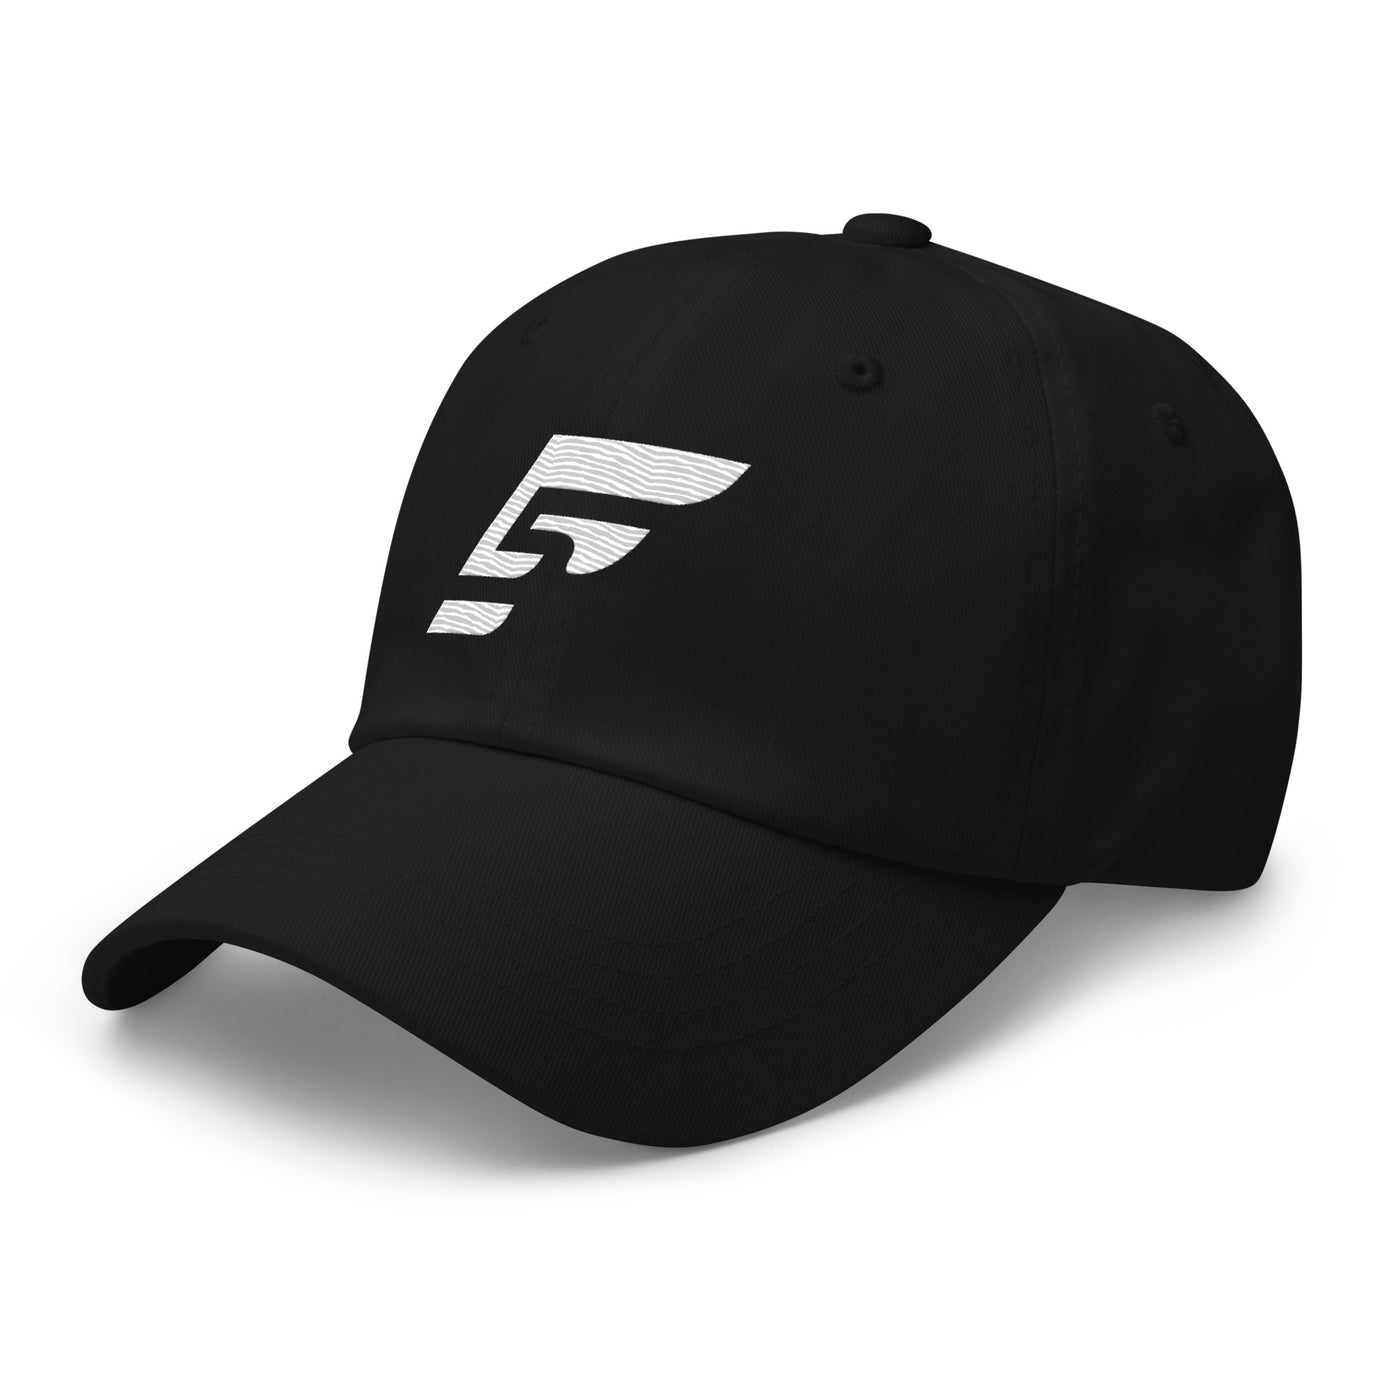 F5 UNISEX CLASSIC DAD HAT